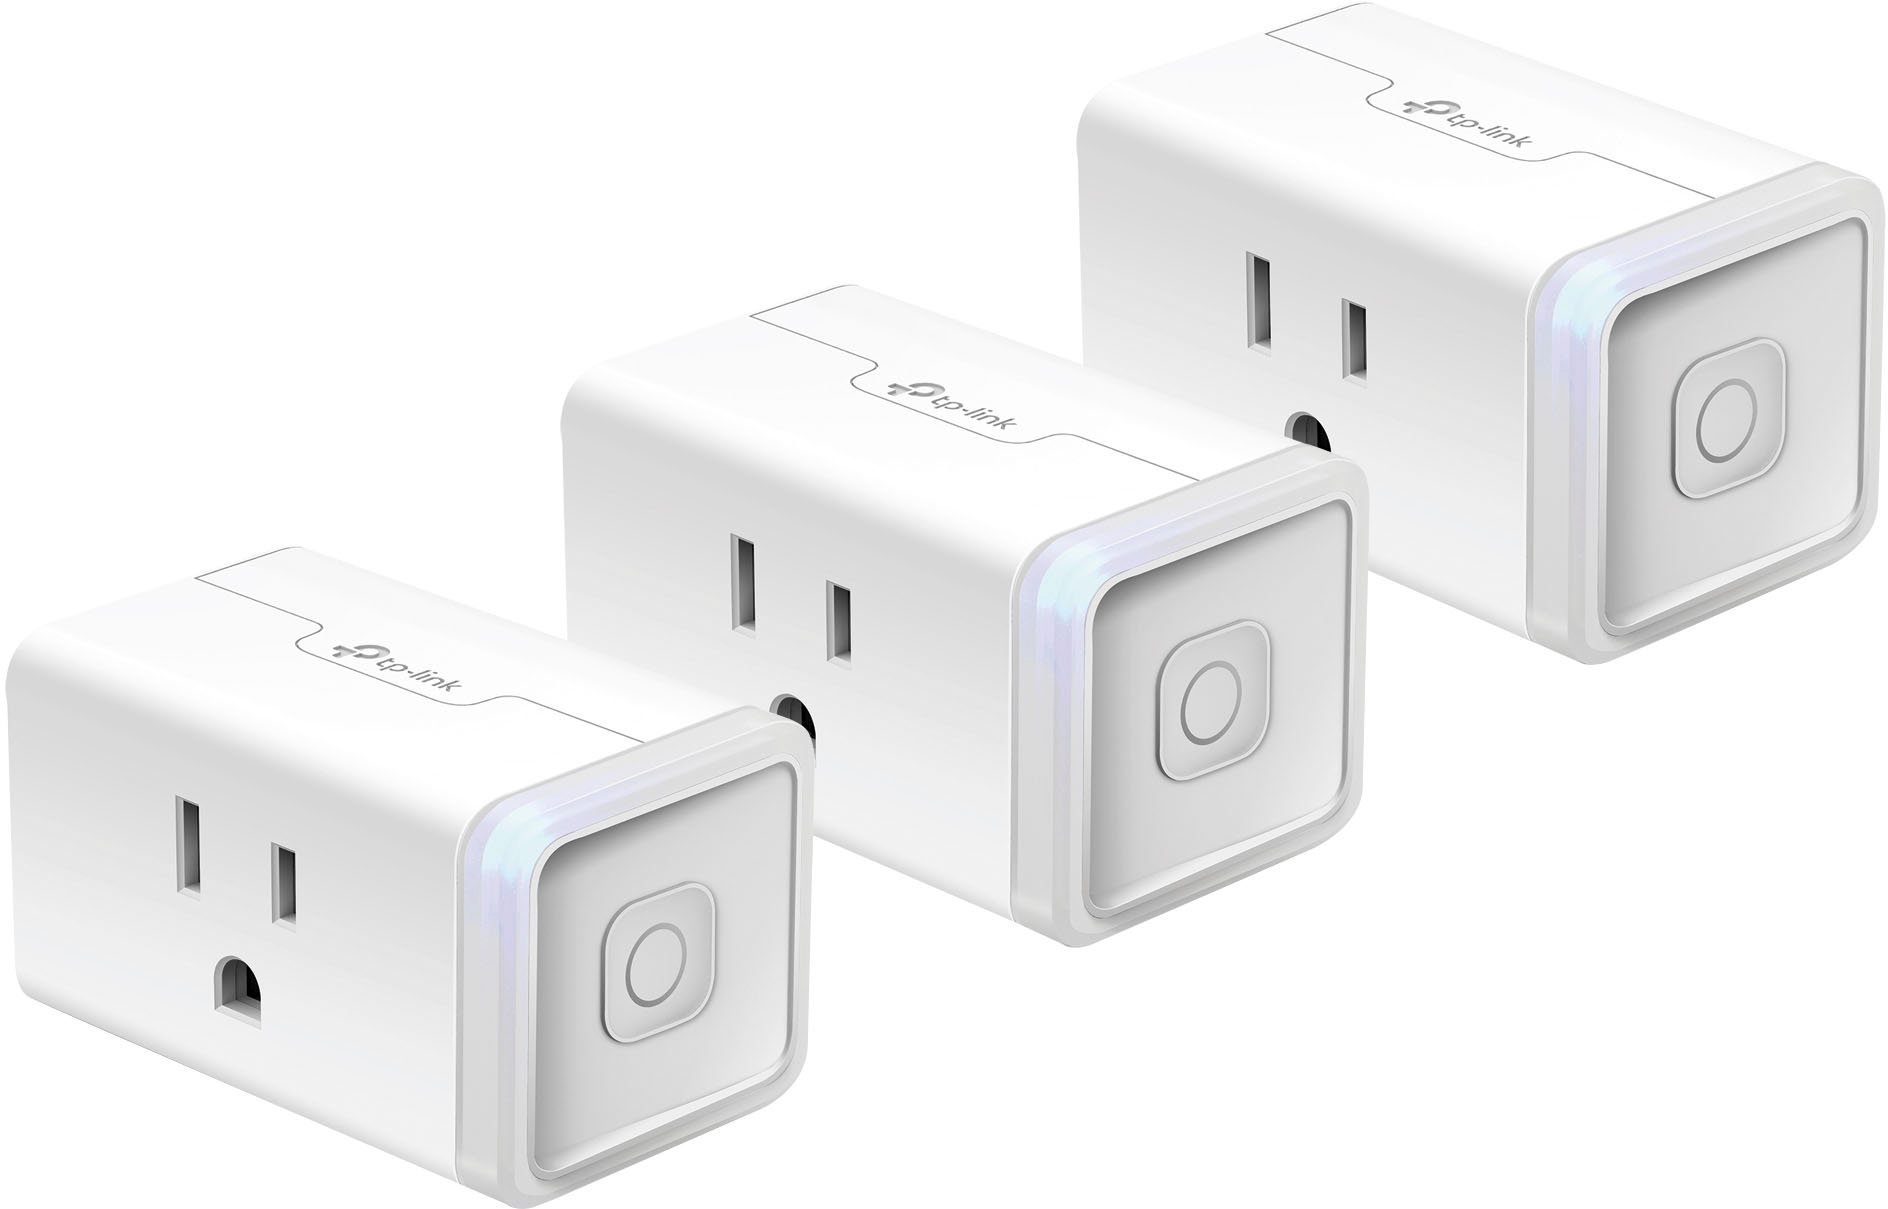 Kasa Smart WiFi Plug Mini - HS103P2 - Setup 